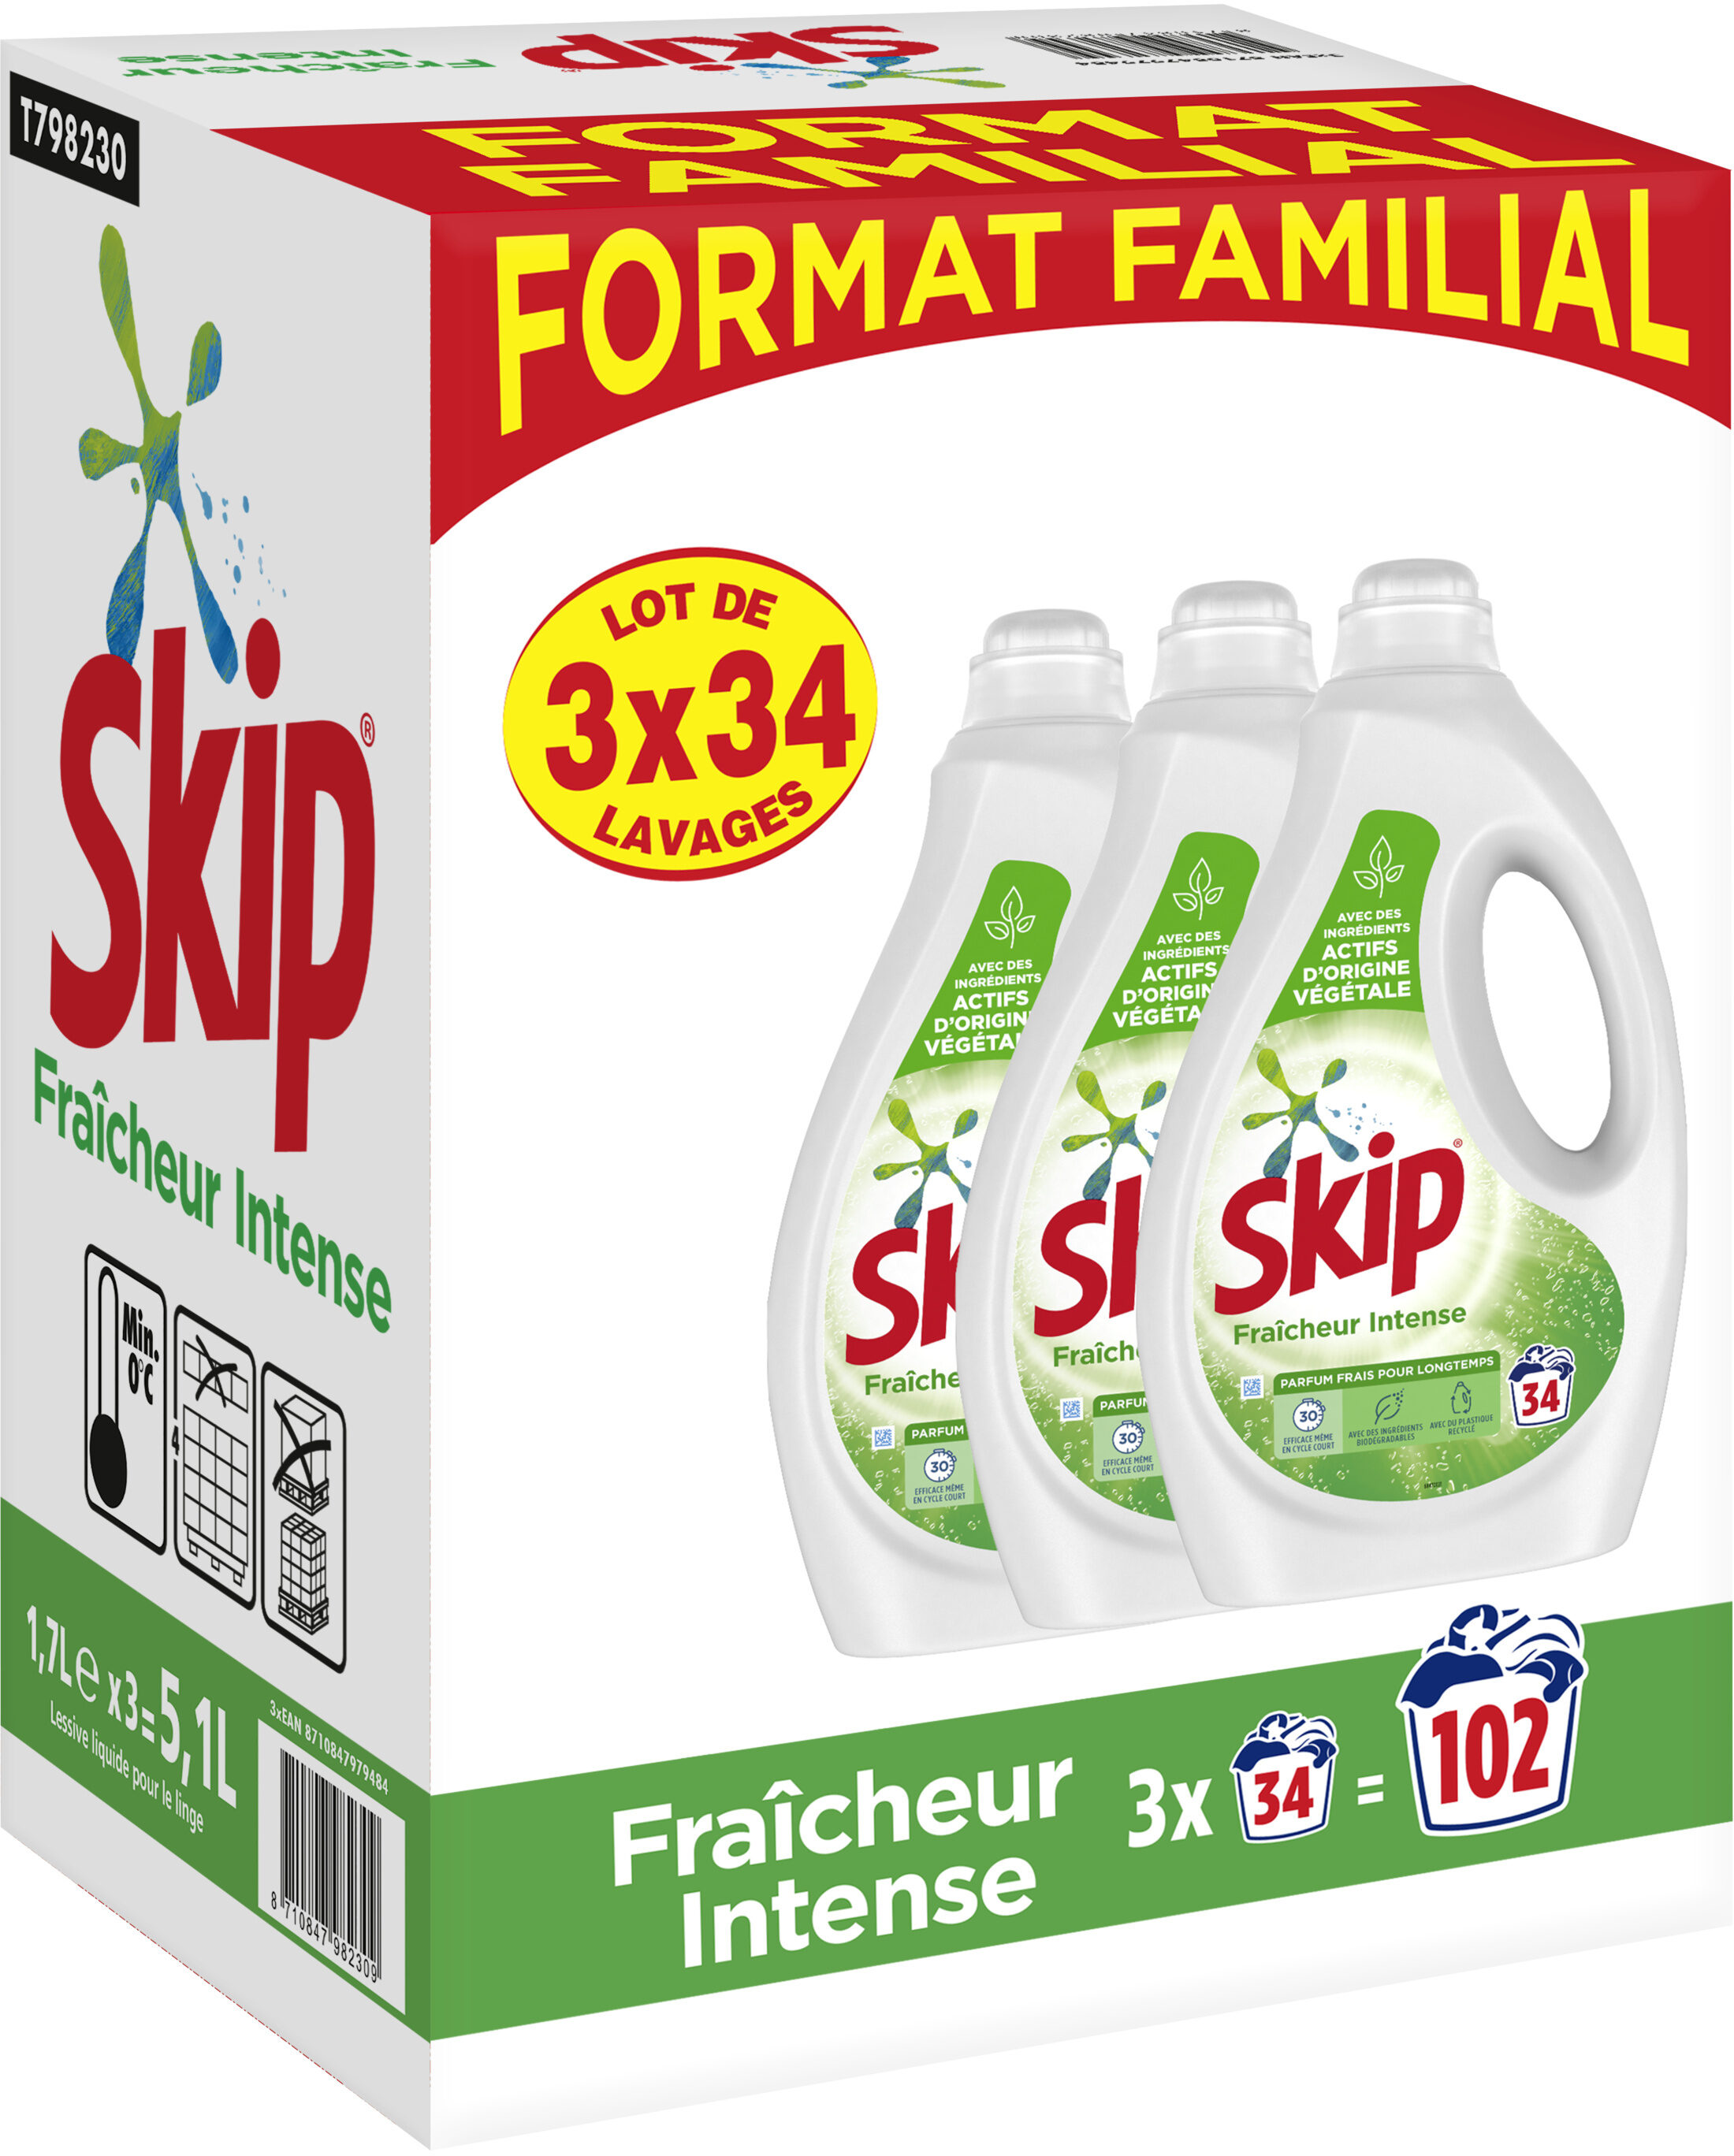 SKIP Lessive Liquide Fraîcheur Intense Lot 3x1,7l - 102 Lavages - Product - fr